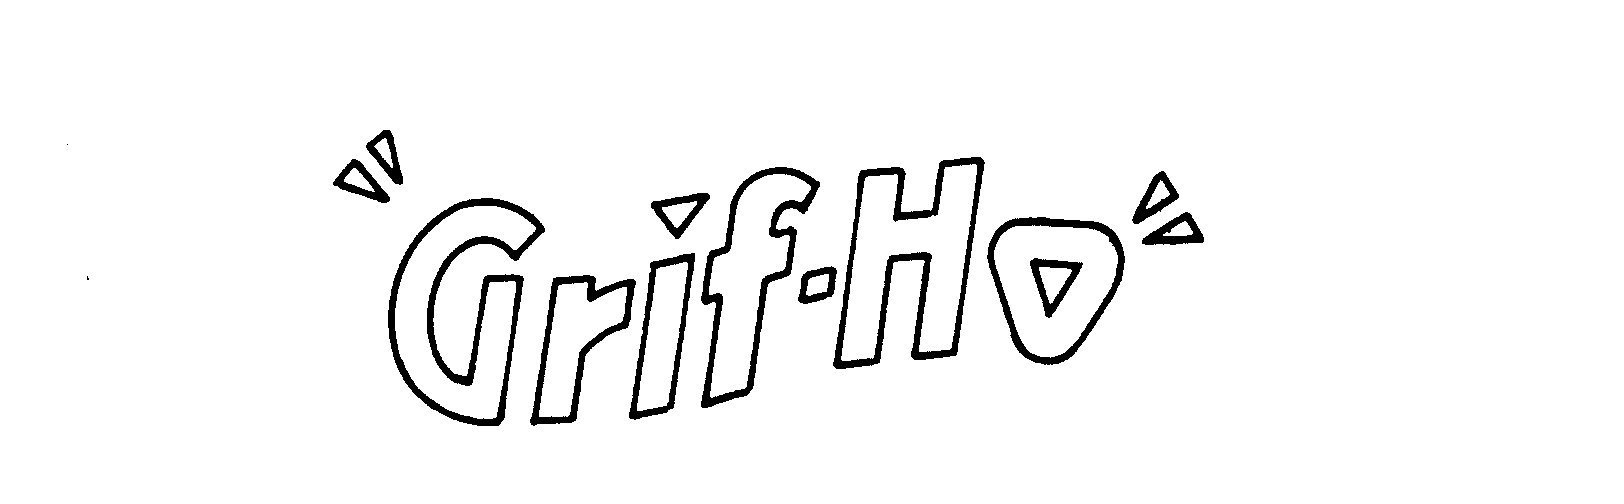  "GRIF-HO"